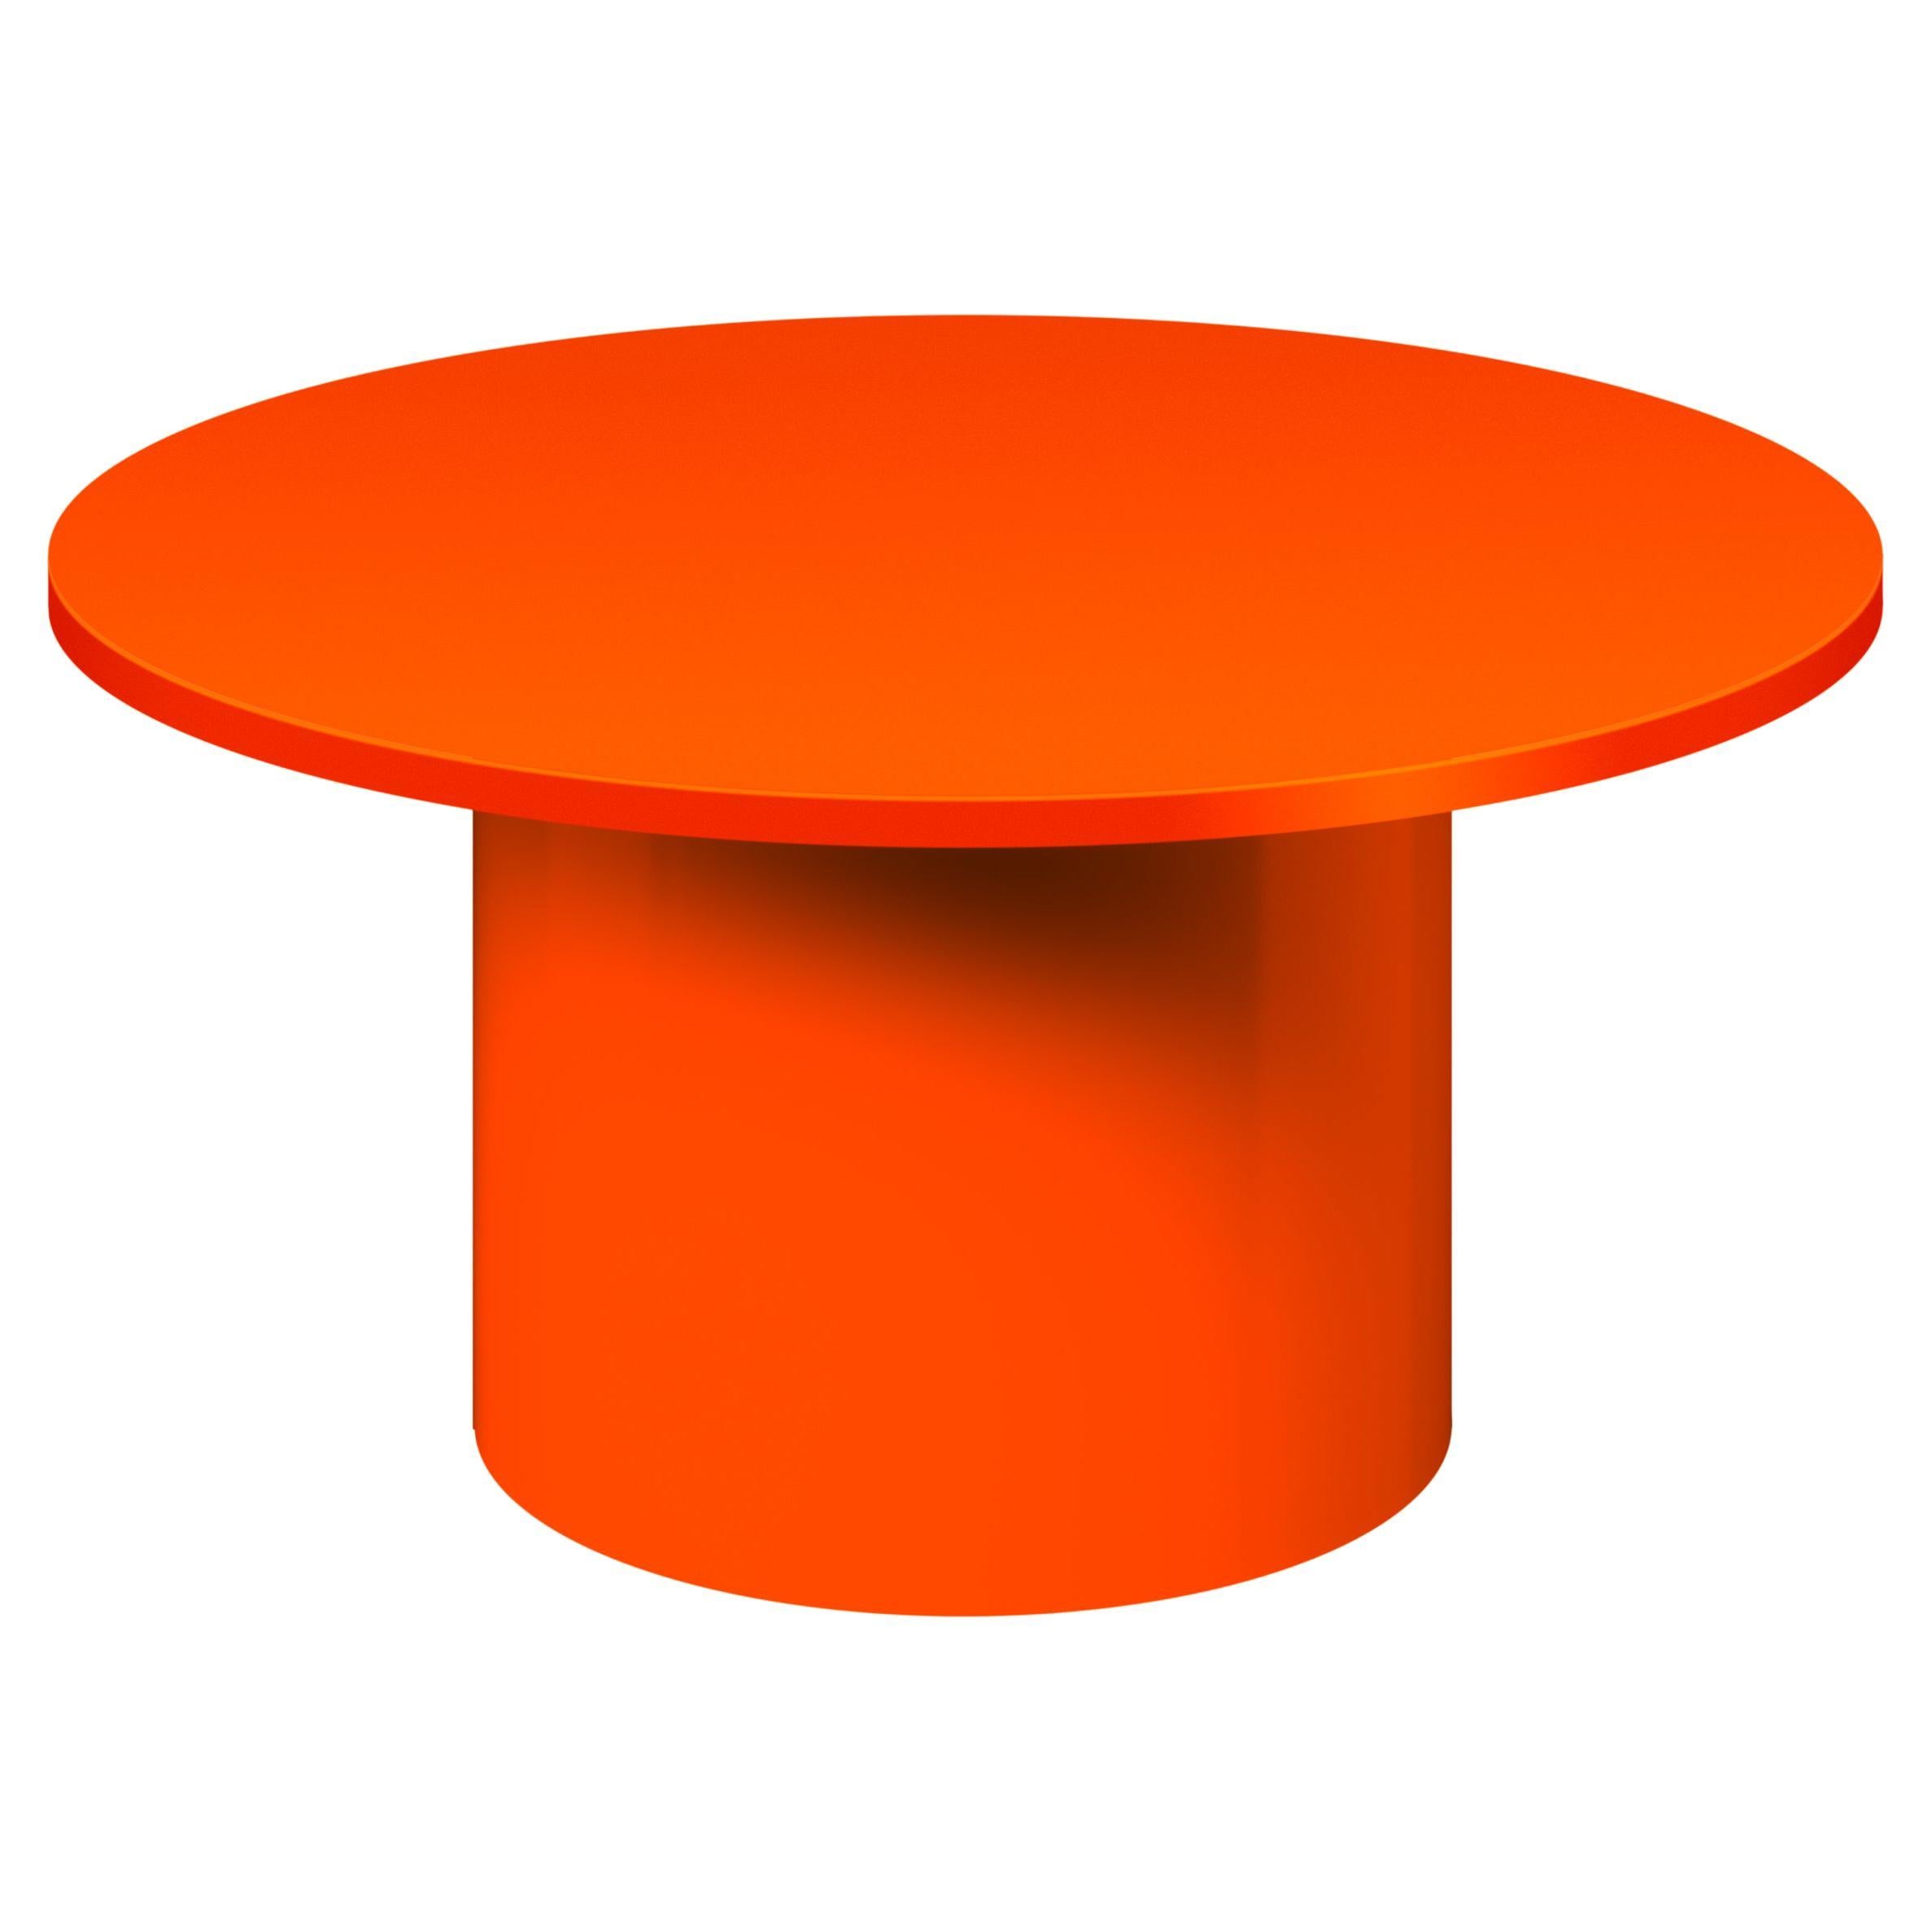 la table d'appoint iconique ENOKI de Philipp Mainzer est présentée en métal, ce qui met en valeur sa forme essentielle et minimale. Fabriquée en acier, recouverte d'un revêtement en poudre dans les couleurs gris soie, orange pur et noir de jais ou